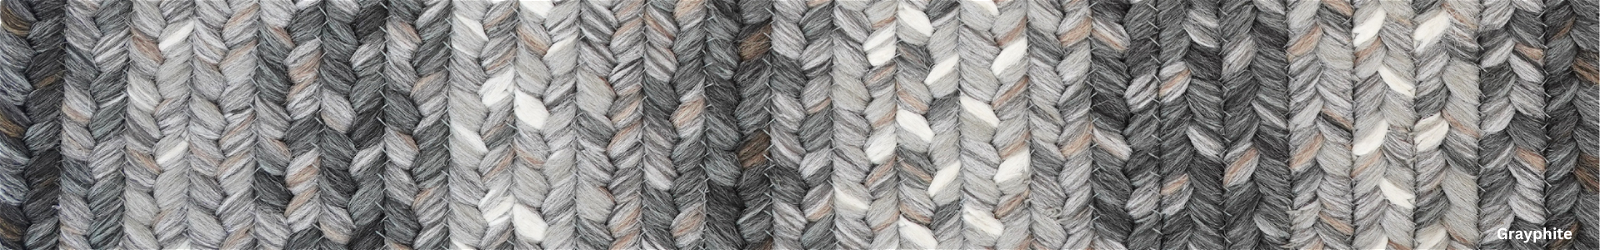 5x8' - Grey Braided Rugs